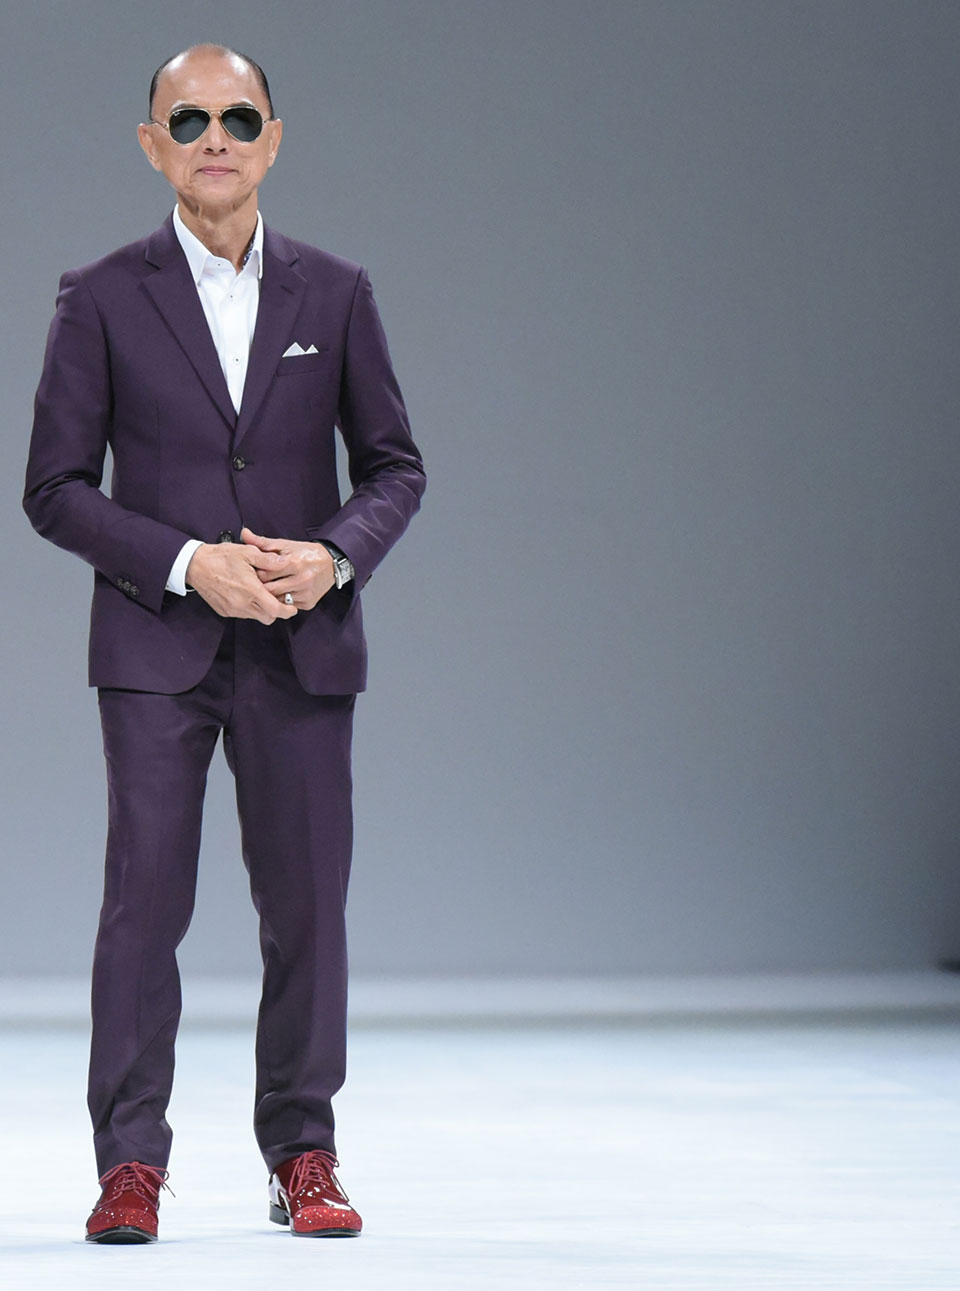 Jimmy Choo - Fashion Designer